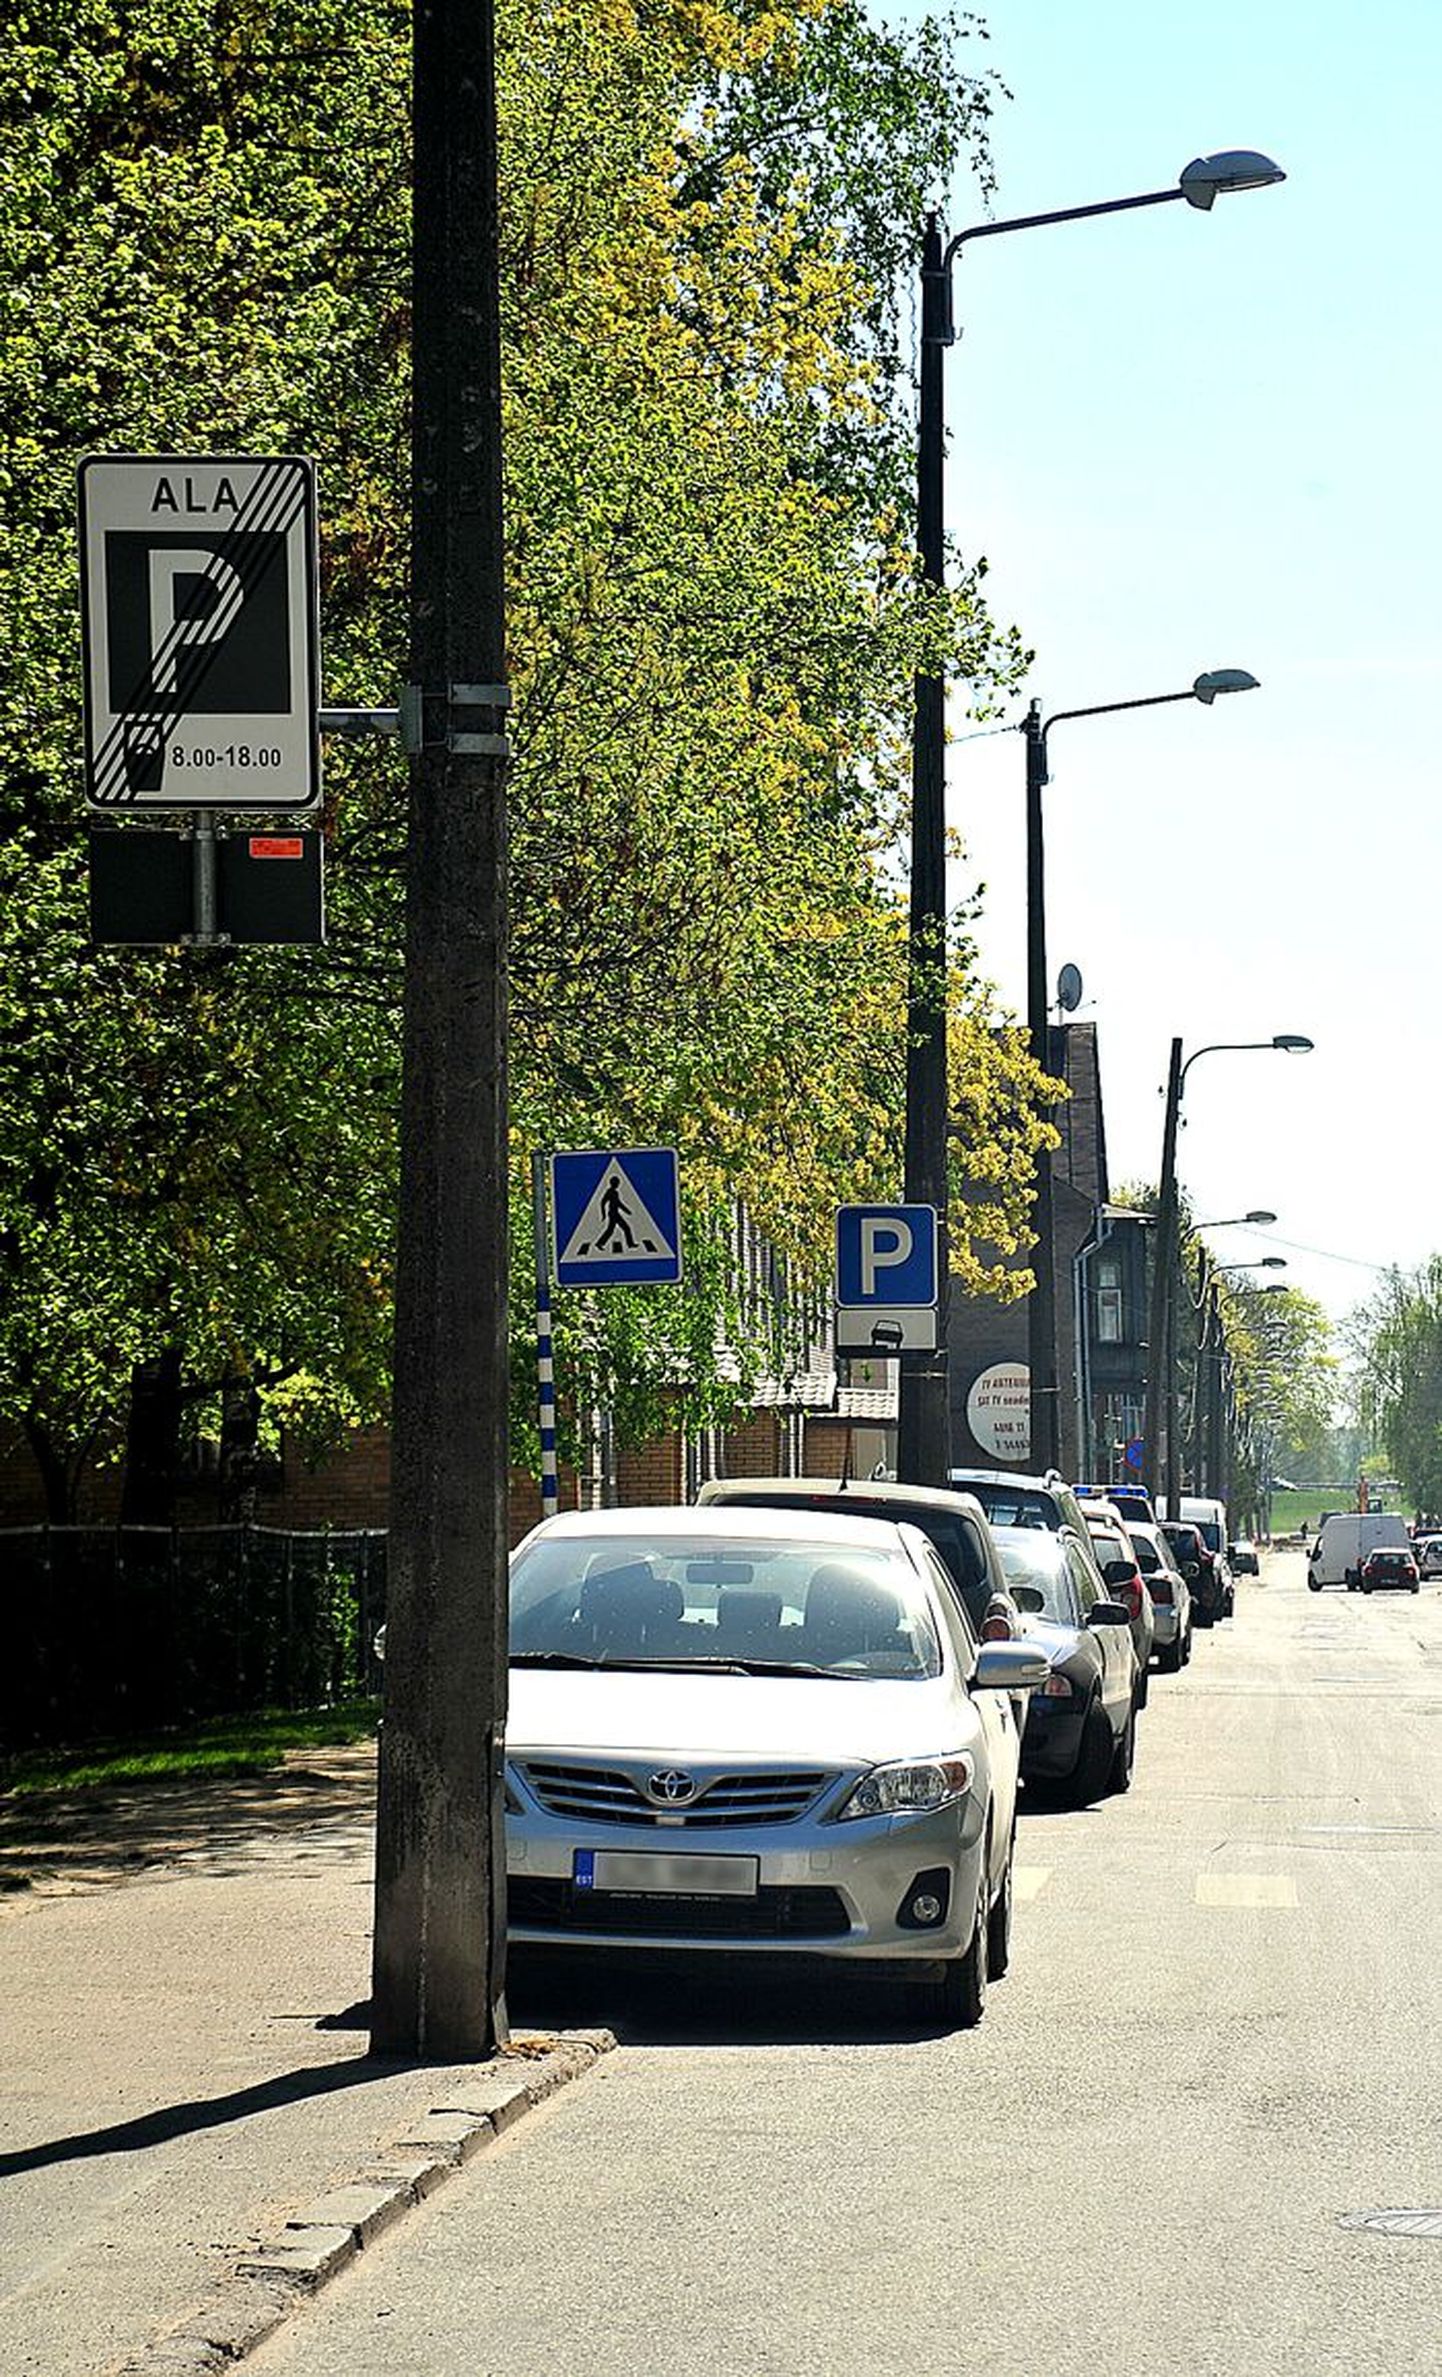 Tasulise parkimise ala piiri taga on Tartu tänavad parkivaid autosid täis. Kas sel põhjusel tuleks laiendada tasulise parkimise ala piire, oli linnavolikogu komisjoni koosolekul üks küsimusi. Pildil Aleksandri tänav eile keskpäeva paiku.